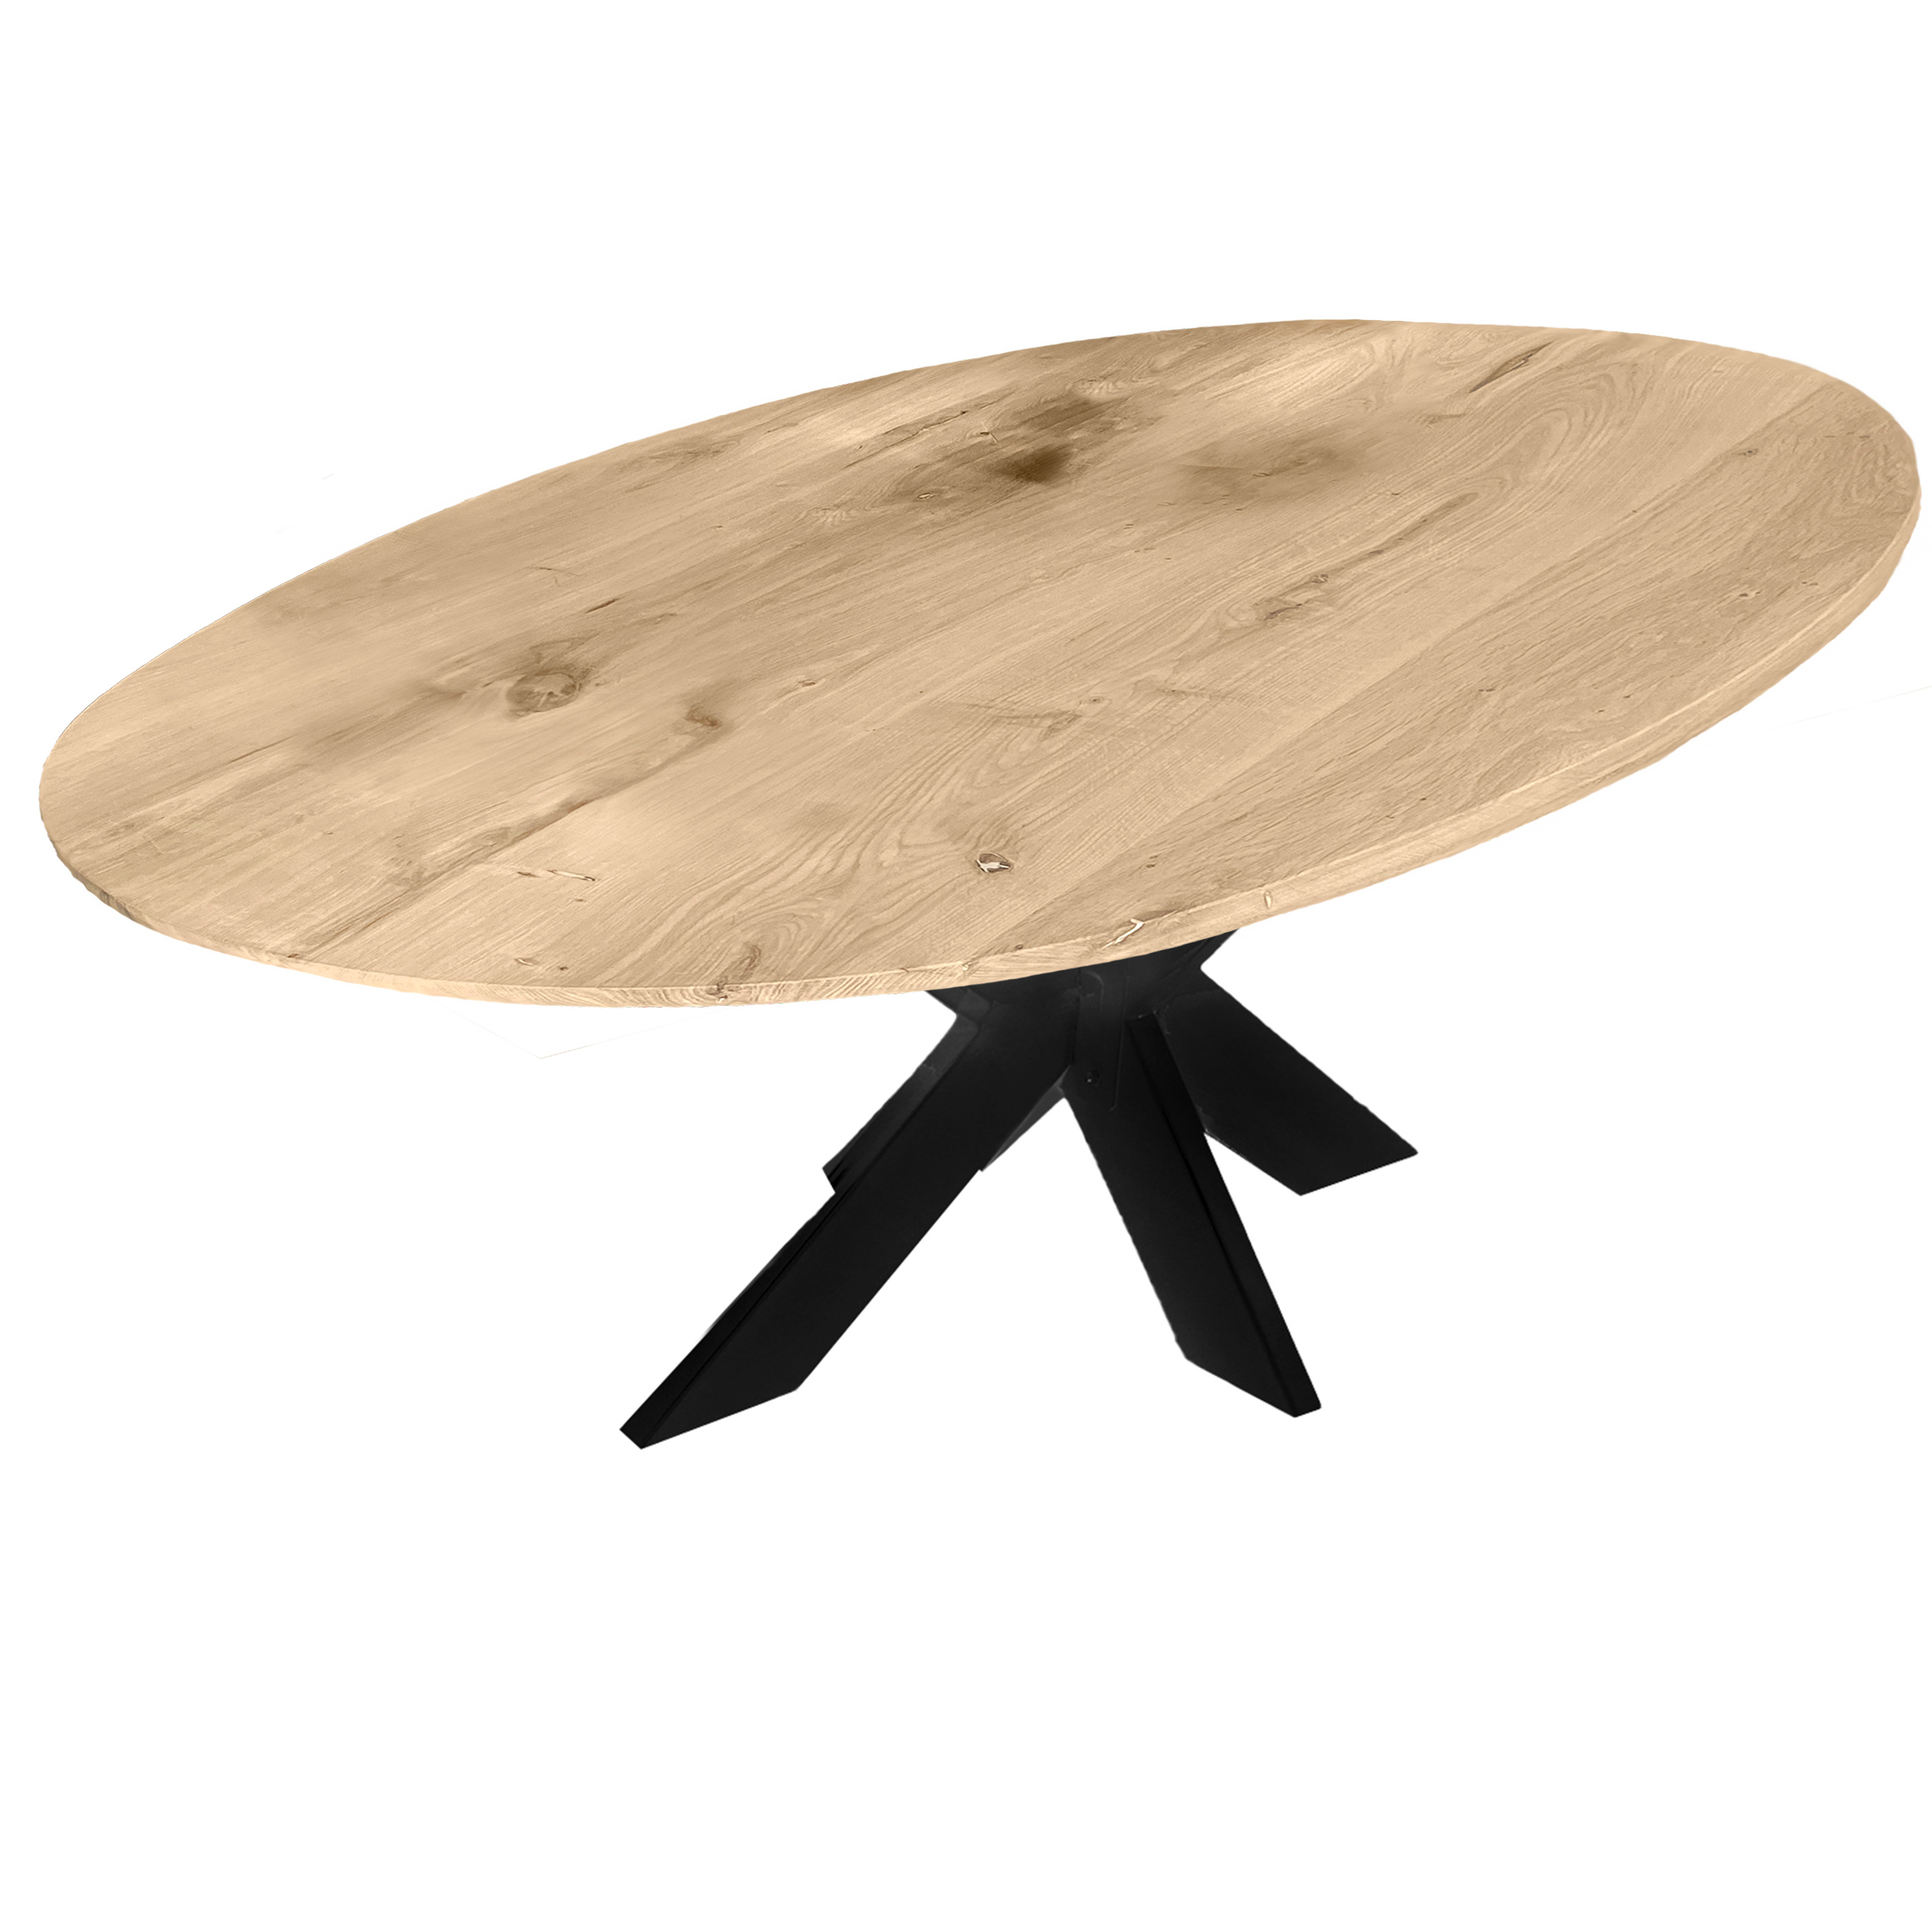  Tischplatte Wildeiche oval - 3 cm dick (1-Schicht) - XXL Lamellen (14-20 cm breit) - Asteiche (rustikal) - Tischplatte ovale / ellipse Eiche - verleimt & künstlich getrocknet (HF 8-12%) - verschiedene Größen